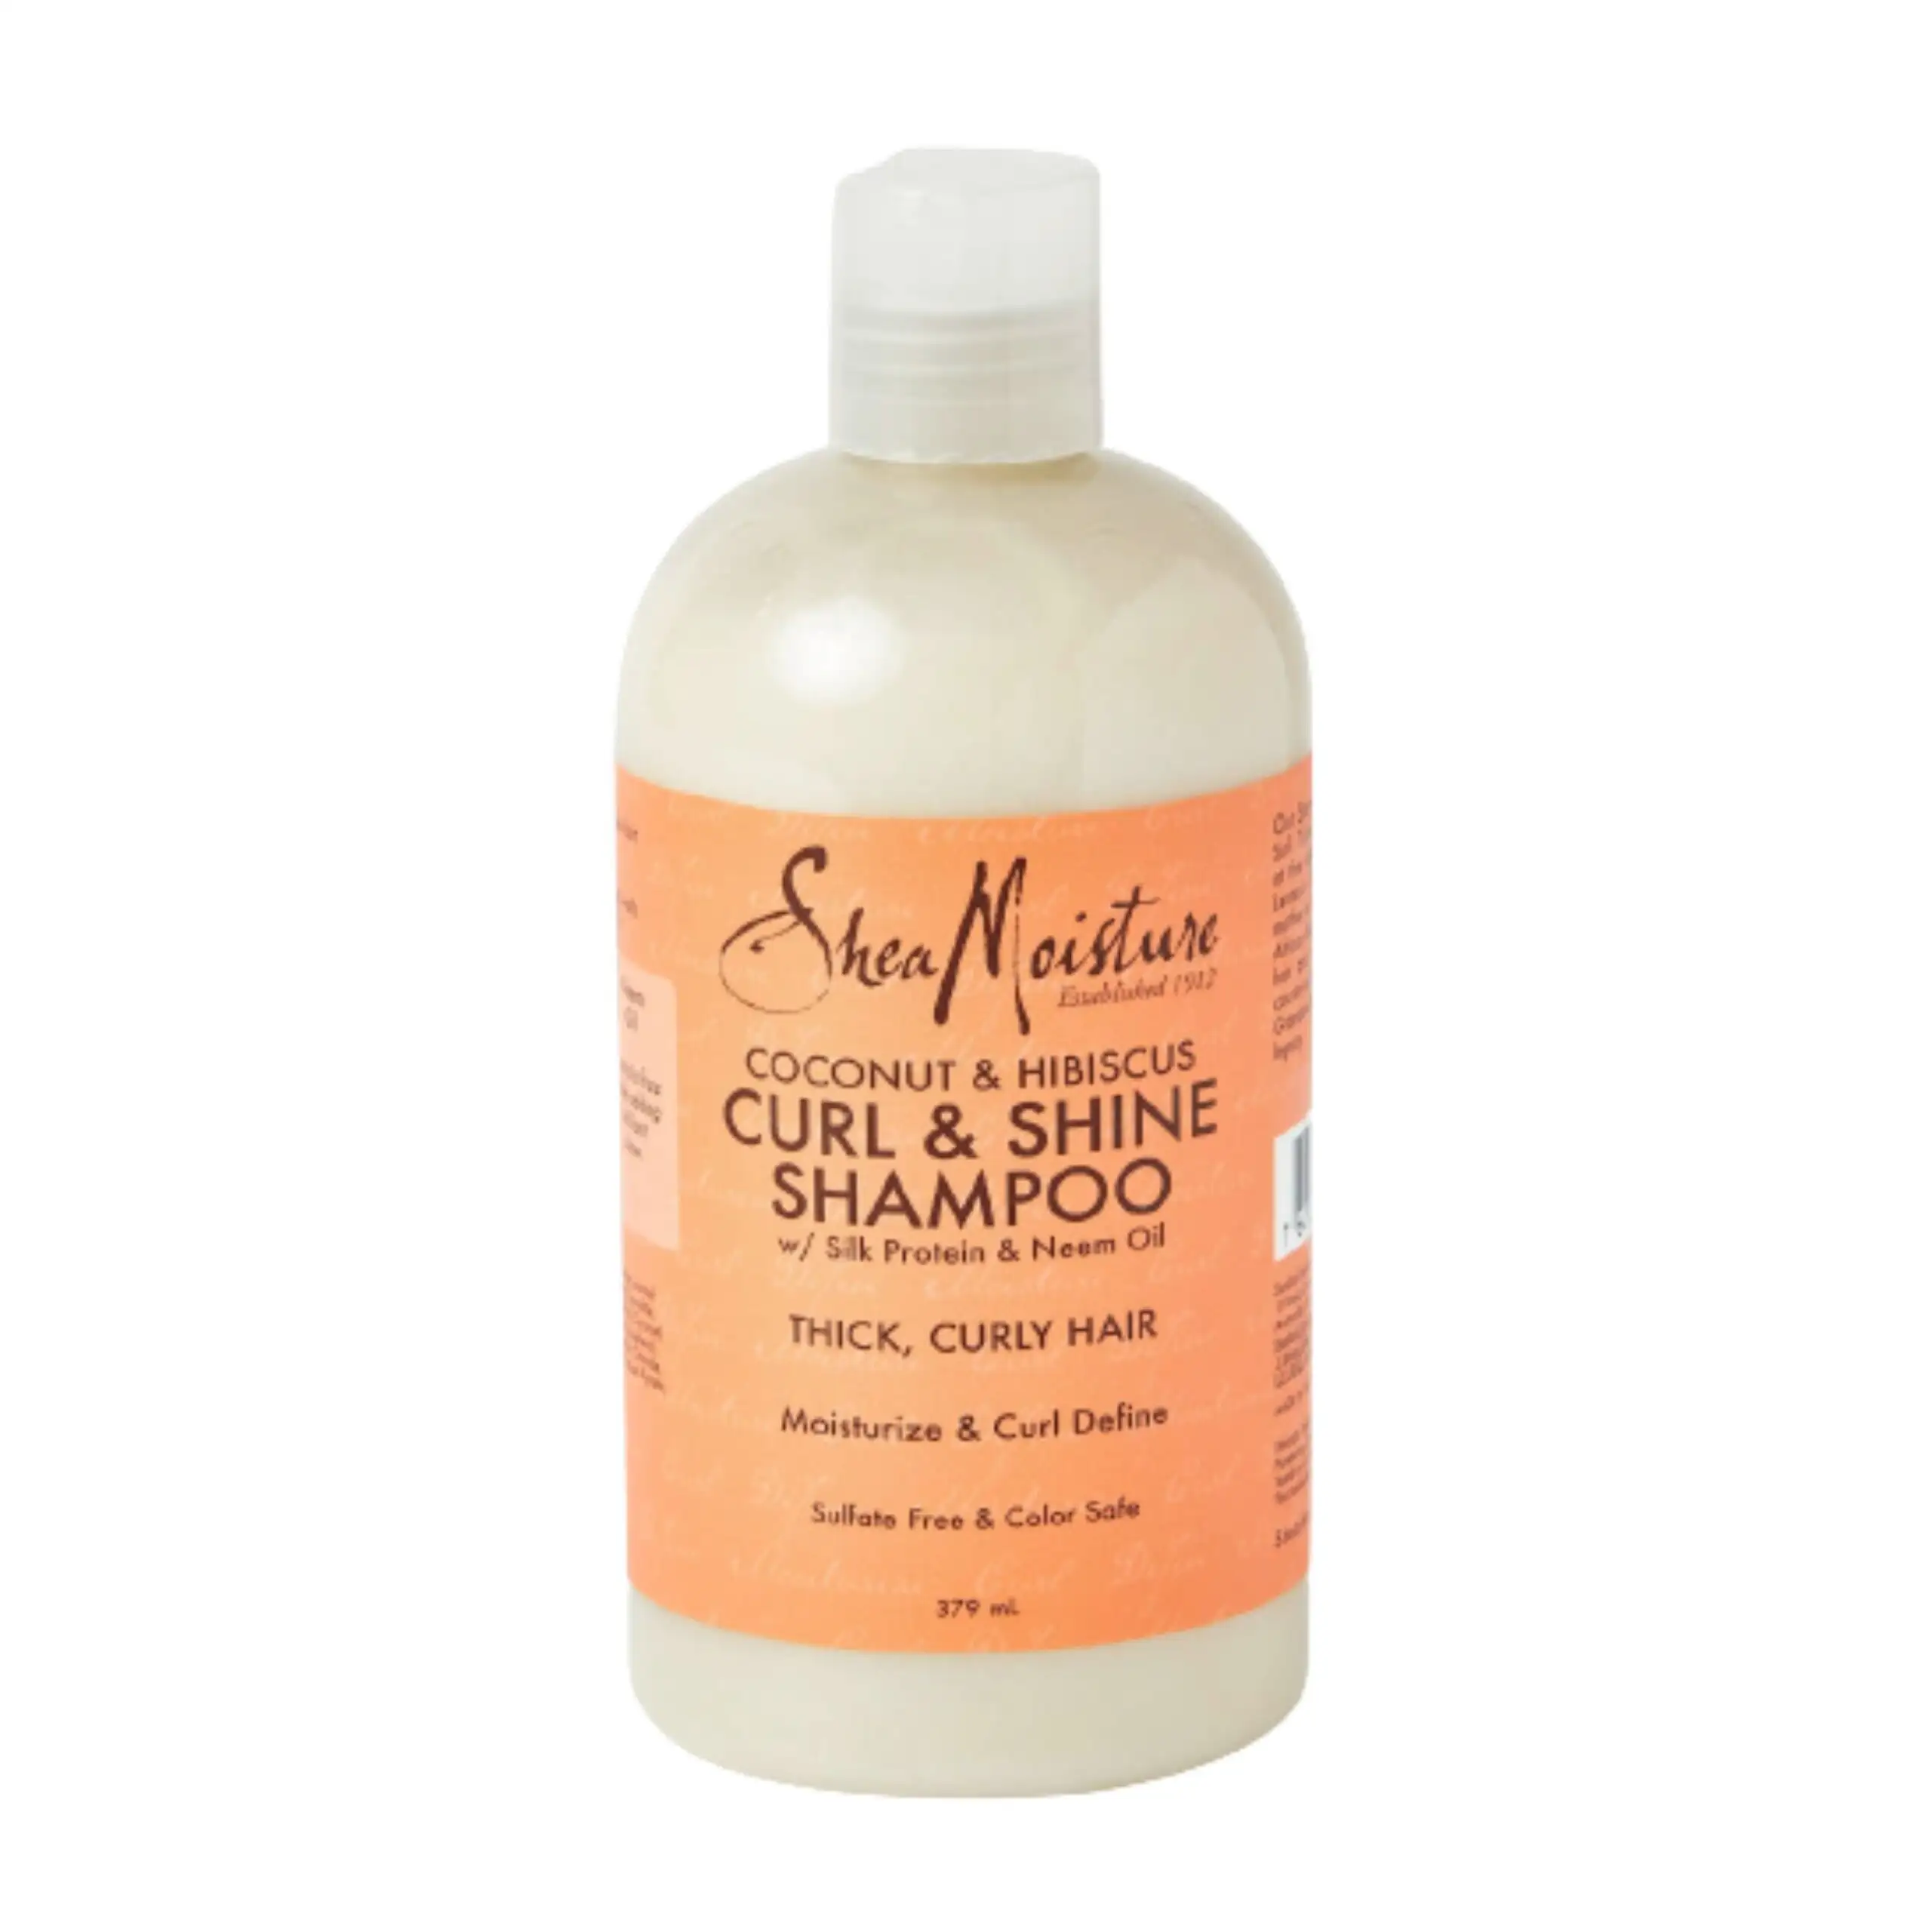 Shea moisture coconut hibiscus curl shine shampoo 384 ml_3293. DIAYTAR SENEGAL - Votre Source de Découvertes Shopping. Naviguez à travers nos catégories et découvrez des articles qui vous surprendront et vous séduiront.